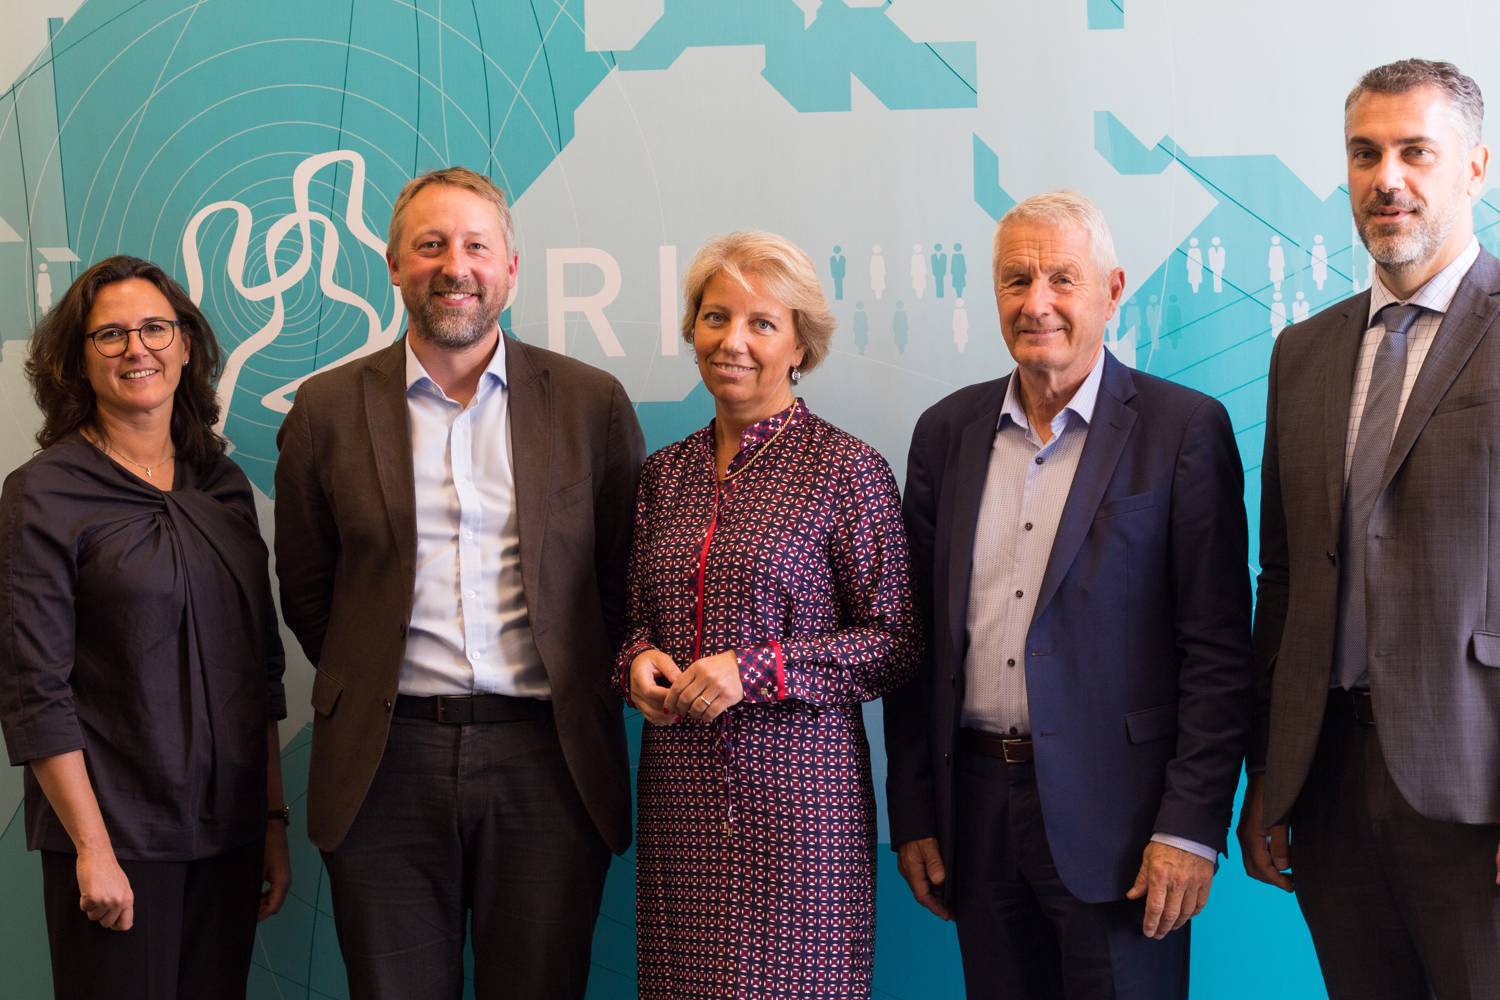 From the PRIO seminar on 10 September 2018. Pictured (from left to right): Ana Perona-Fjeldstad; Henrik Urdal; Andreja Metelko Zgombić; Thorbjørn Jagland; Hrvoje Marušić. Photo: Georgina Berry / PRIO